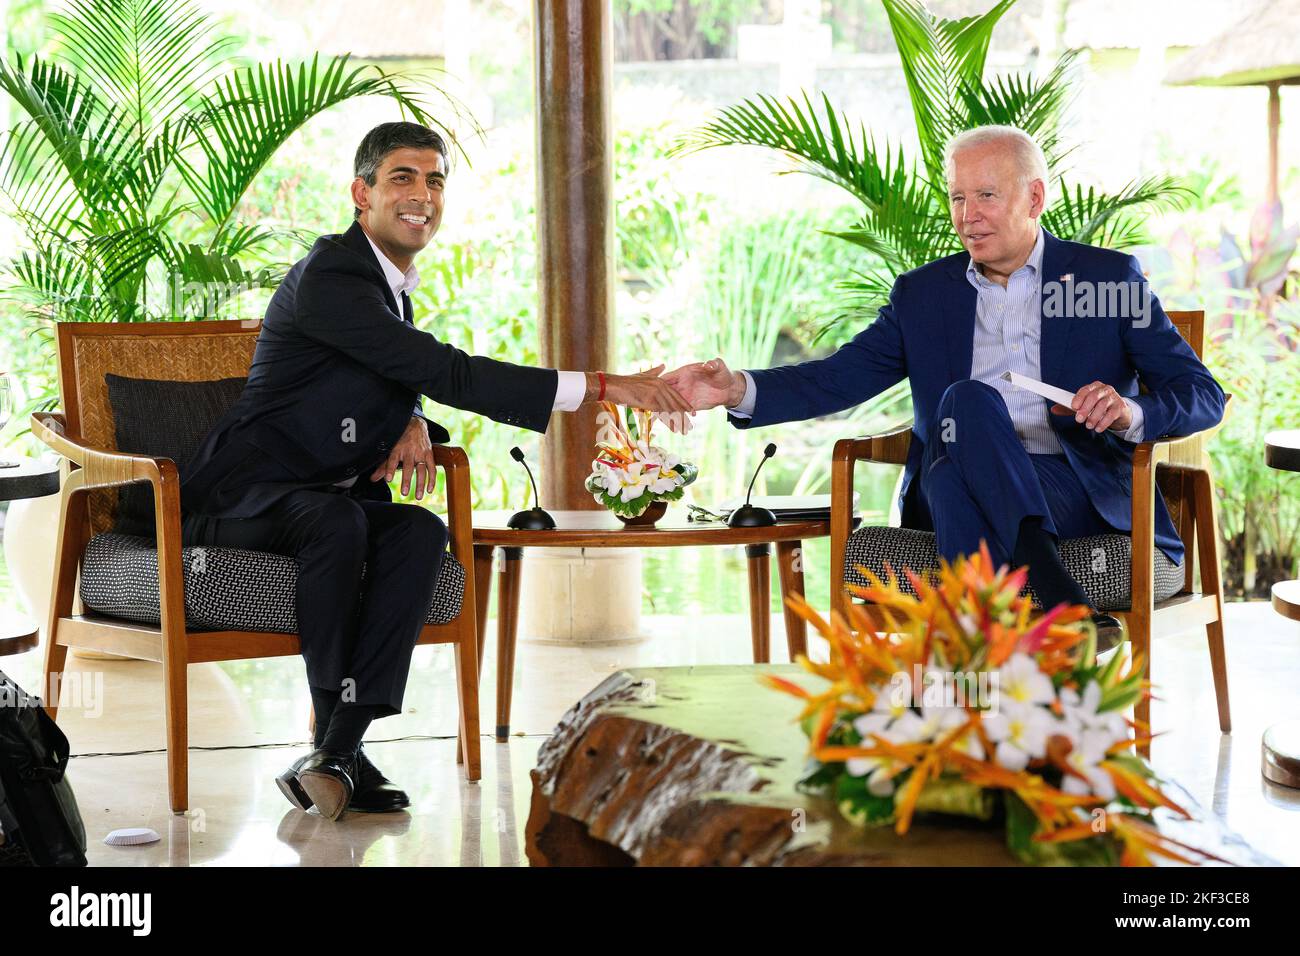 Le Premier ministre Rishi Sunak se met en présence du président américain Joe Biden lors d’une réunion bilatérale au sommet de G20 à Nusa Dua, à Bali, en Indonésie. Date de la photo: Mercredi 16 novembre 2022. Banque D'Images